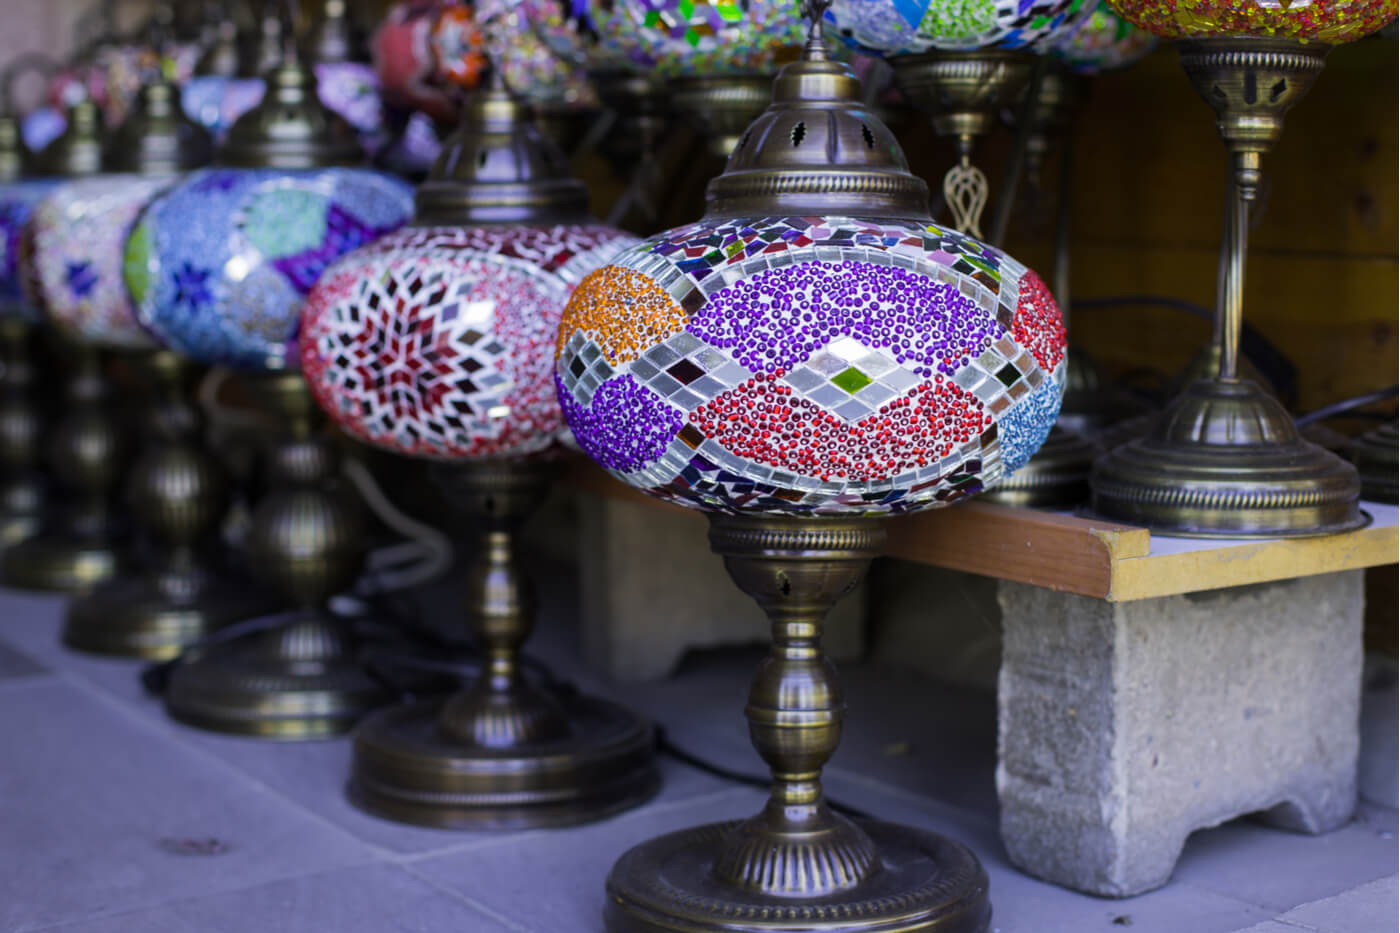 El encanto de las lámparas turcas en la decoración